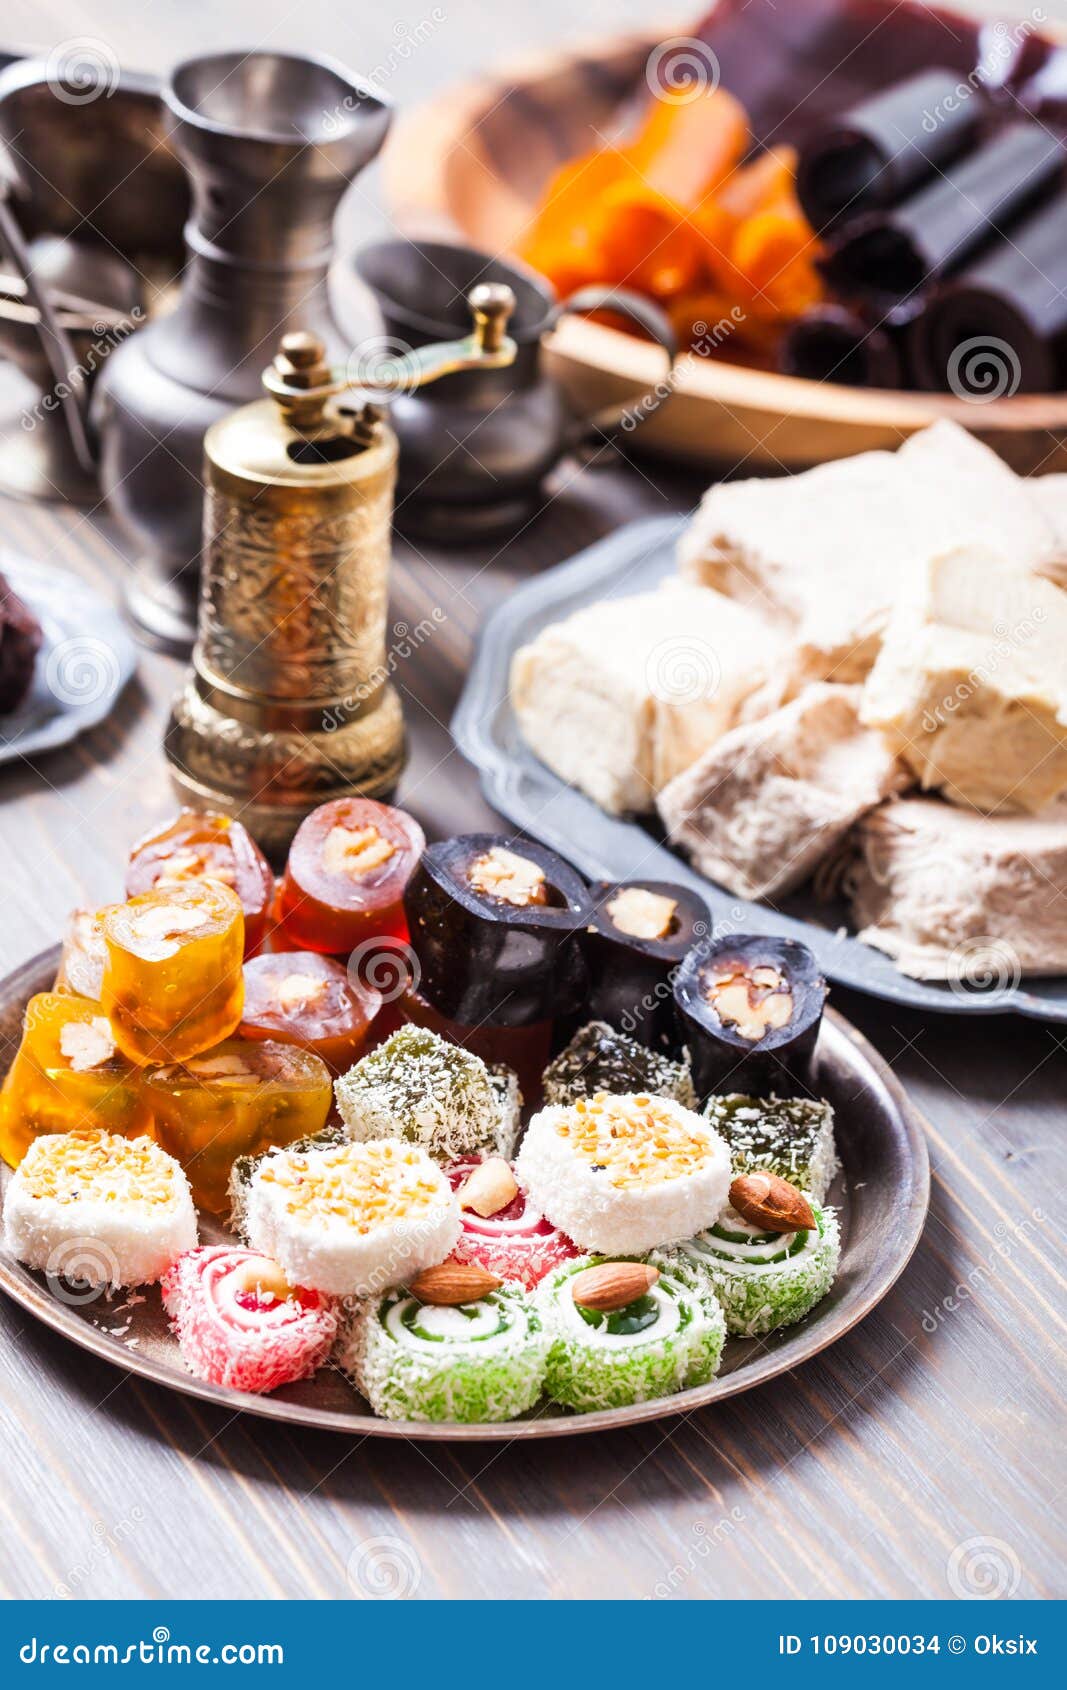 Turkish Delight Rahat Lokum Stock Photo - Image of rahat, group: 109030034